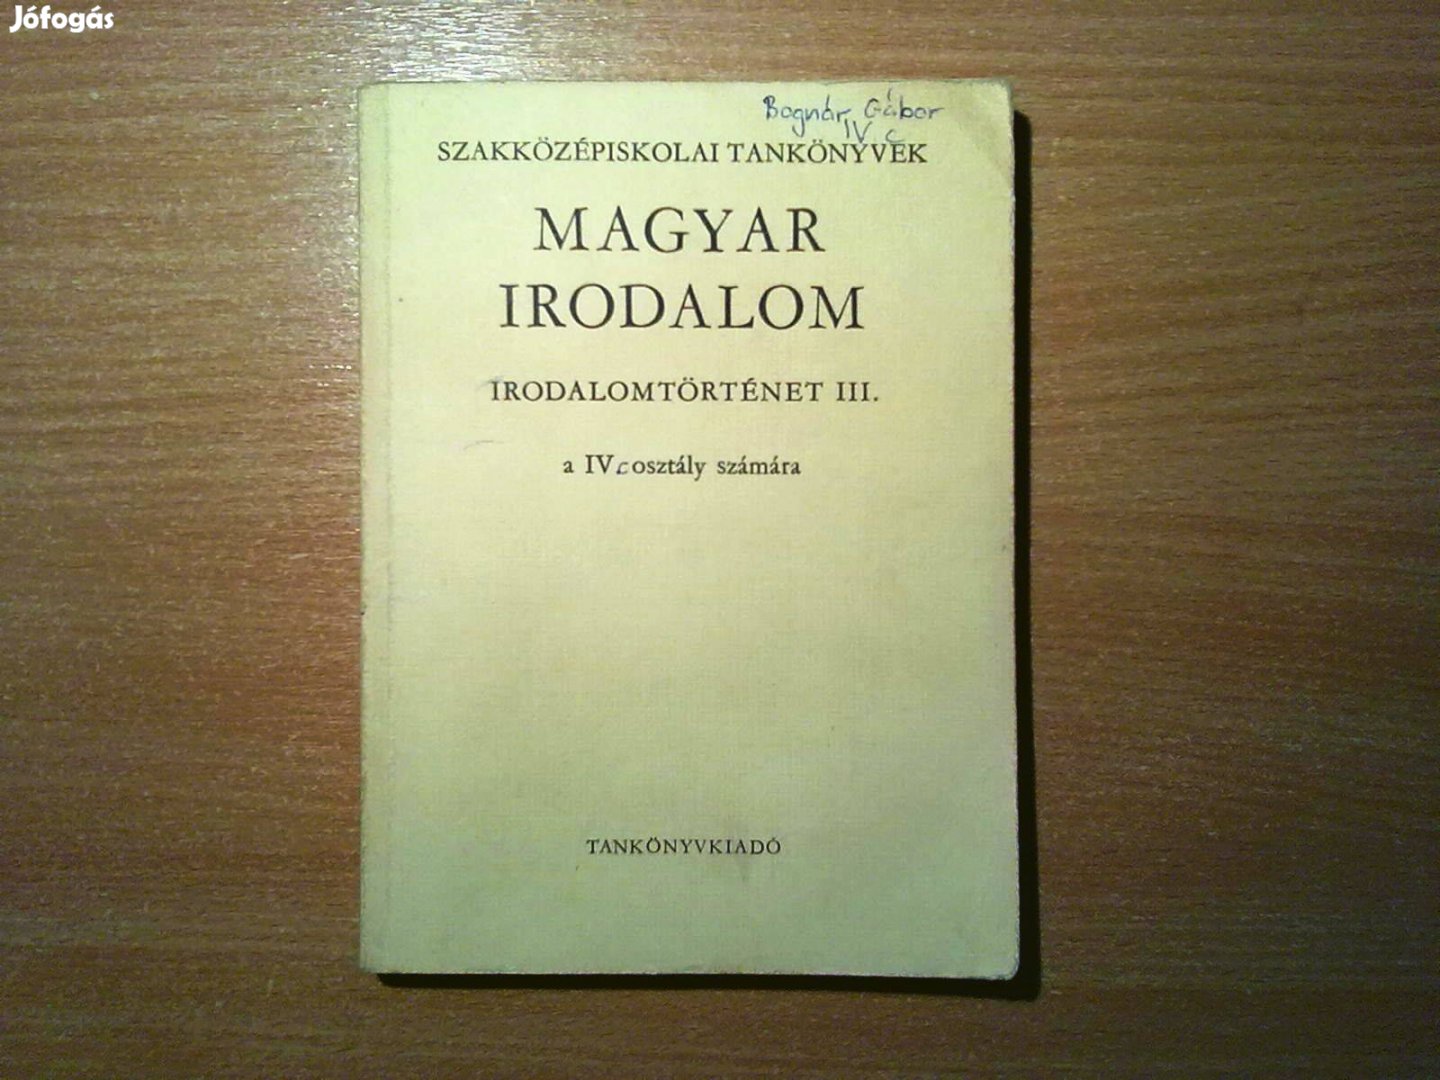 Magyar irodalom - Irodalomtörténet III